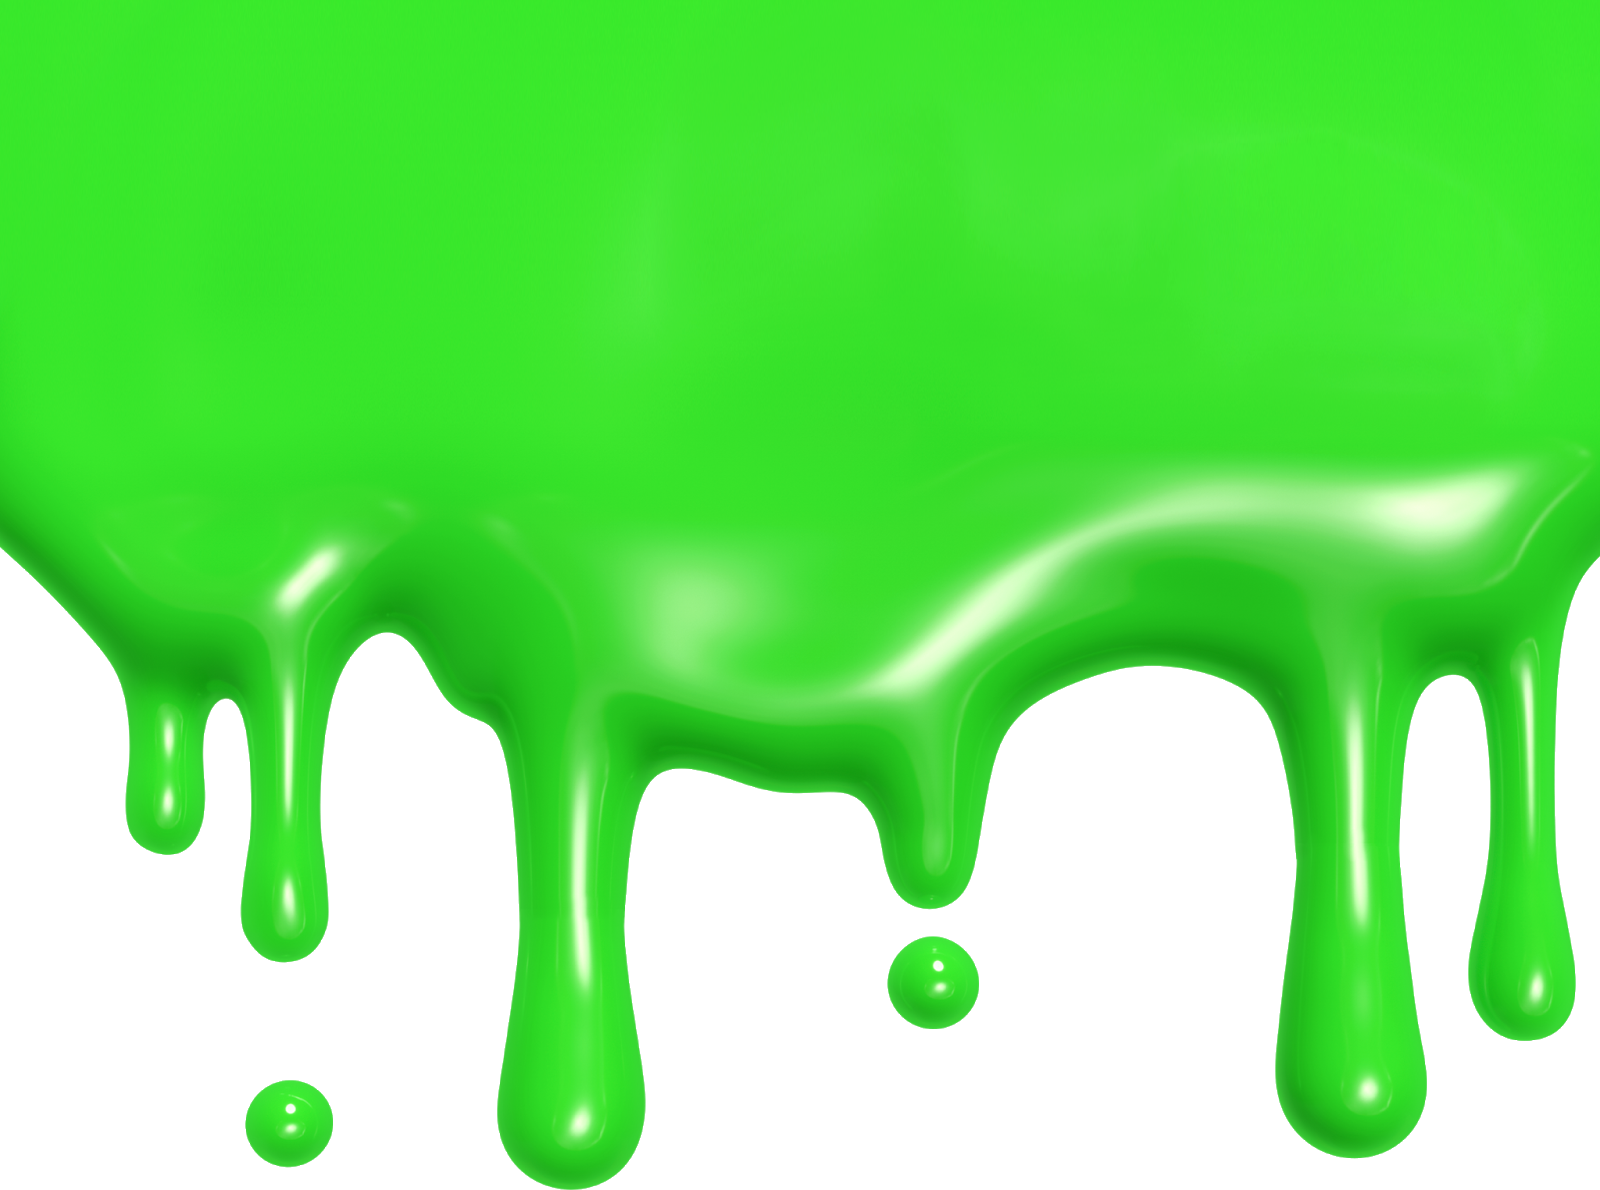 Slime слизь. Зеленый СЛАЙМ жижа. Слизь стекает. Подтеки краски. Зеленые подтеки.